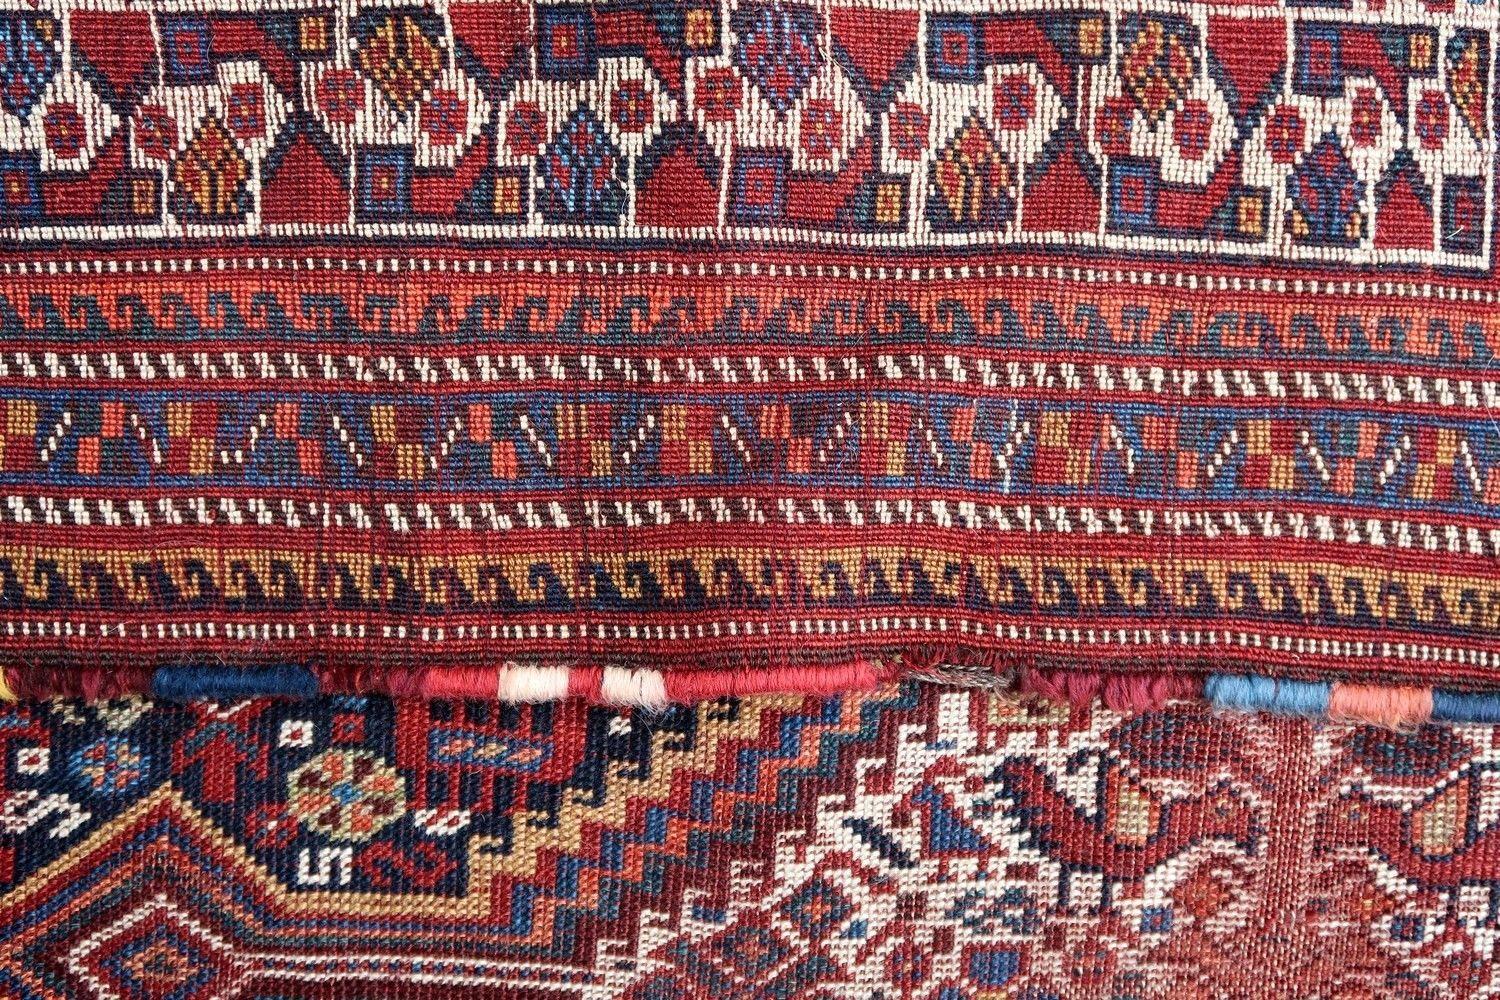 Handgefertigter antiker Gashkai-Teppich im Originalzustand, hat einige Alterserscheinungen. Der Teppich stammt vom Anfang des 20. Jahrhunderts.

?-Zustand: notleidend,

-um: 1900,

-größe: 5' x 6,5' (80cm x 135cm),

-material: